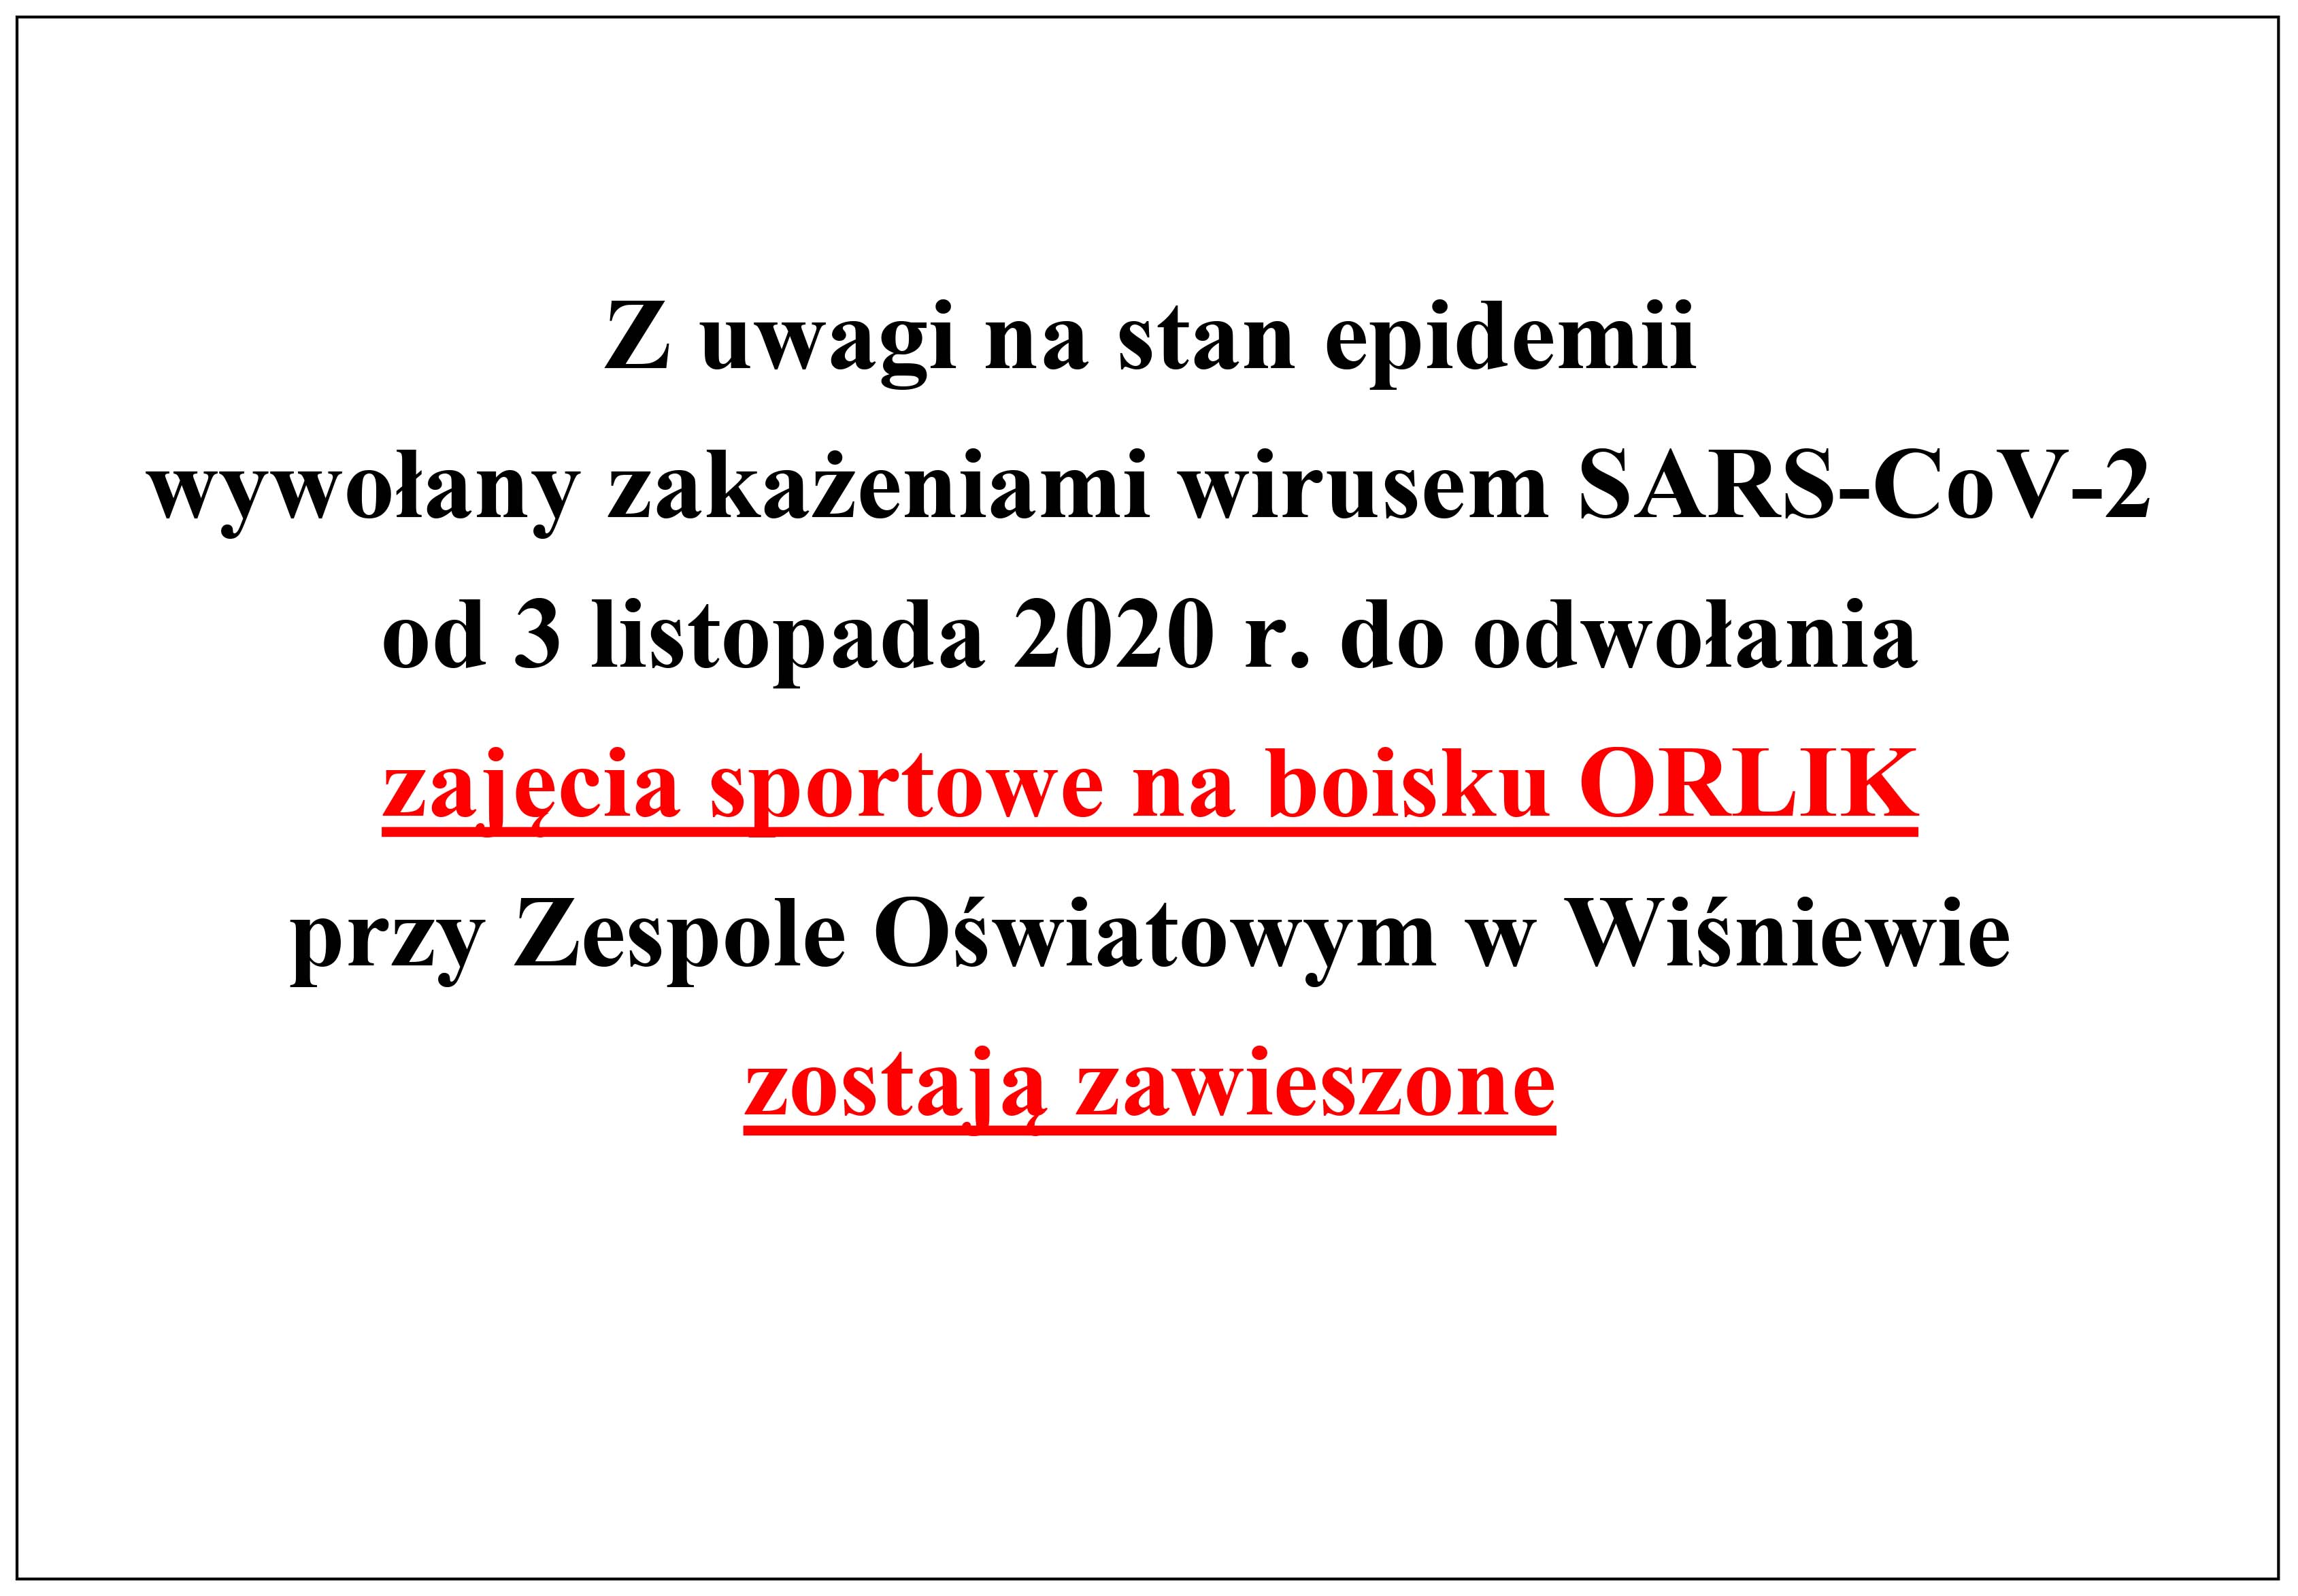 Ogloszenie o treści: Z uwagi na stan epidemii wywołany zakażeniami wirusem SARS-CoV-2 od 3 listopada 2020 r. do odwołania zajęcia sportowe na boisku ORLIK przy Zespole Oświatowym w Wiśniewie  zostają zawieszone.